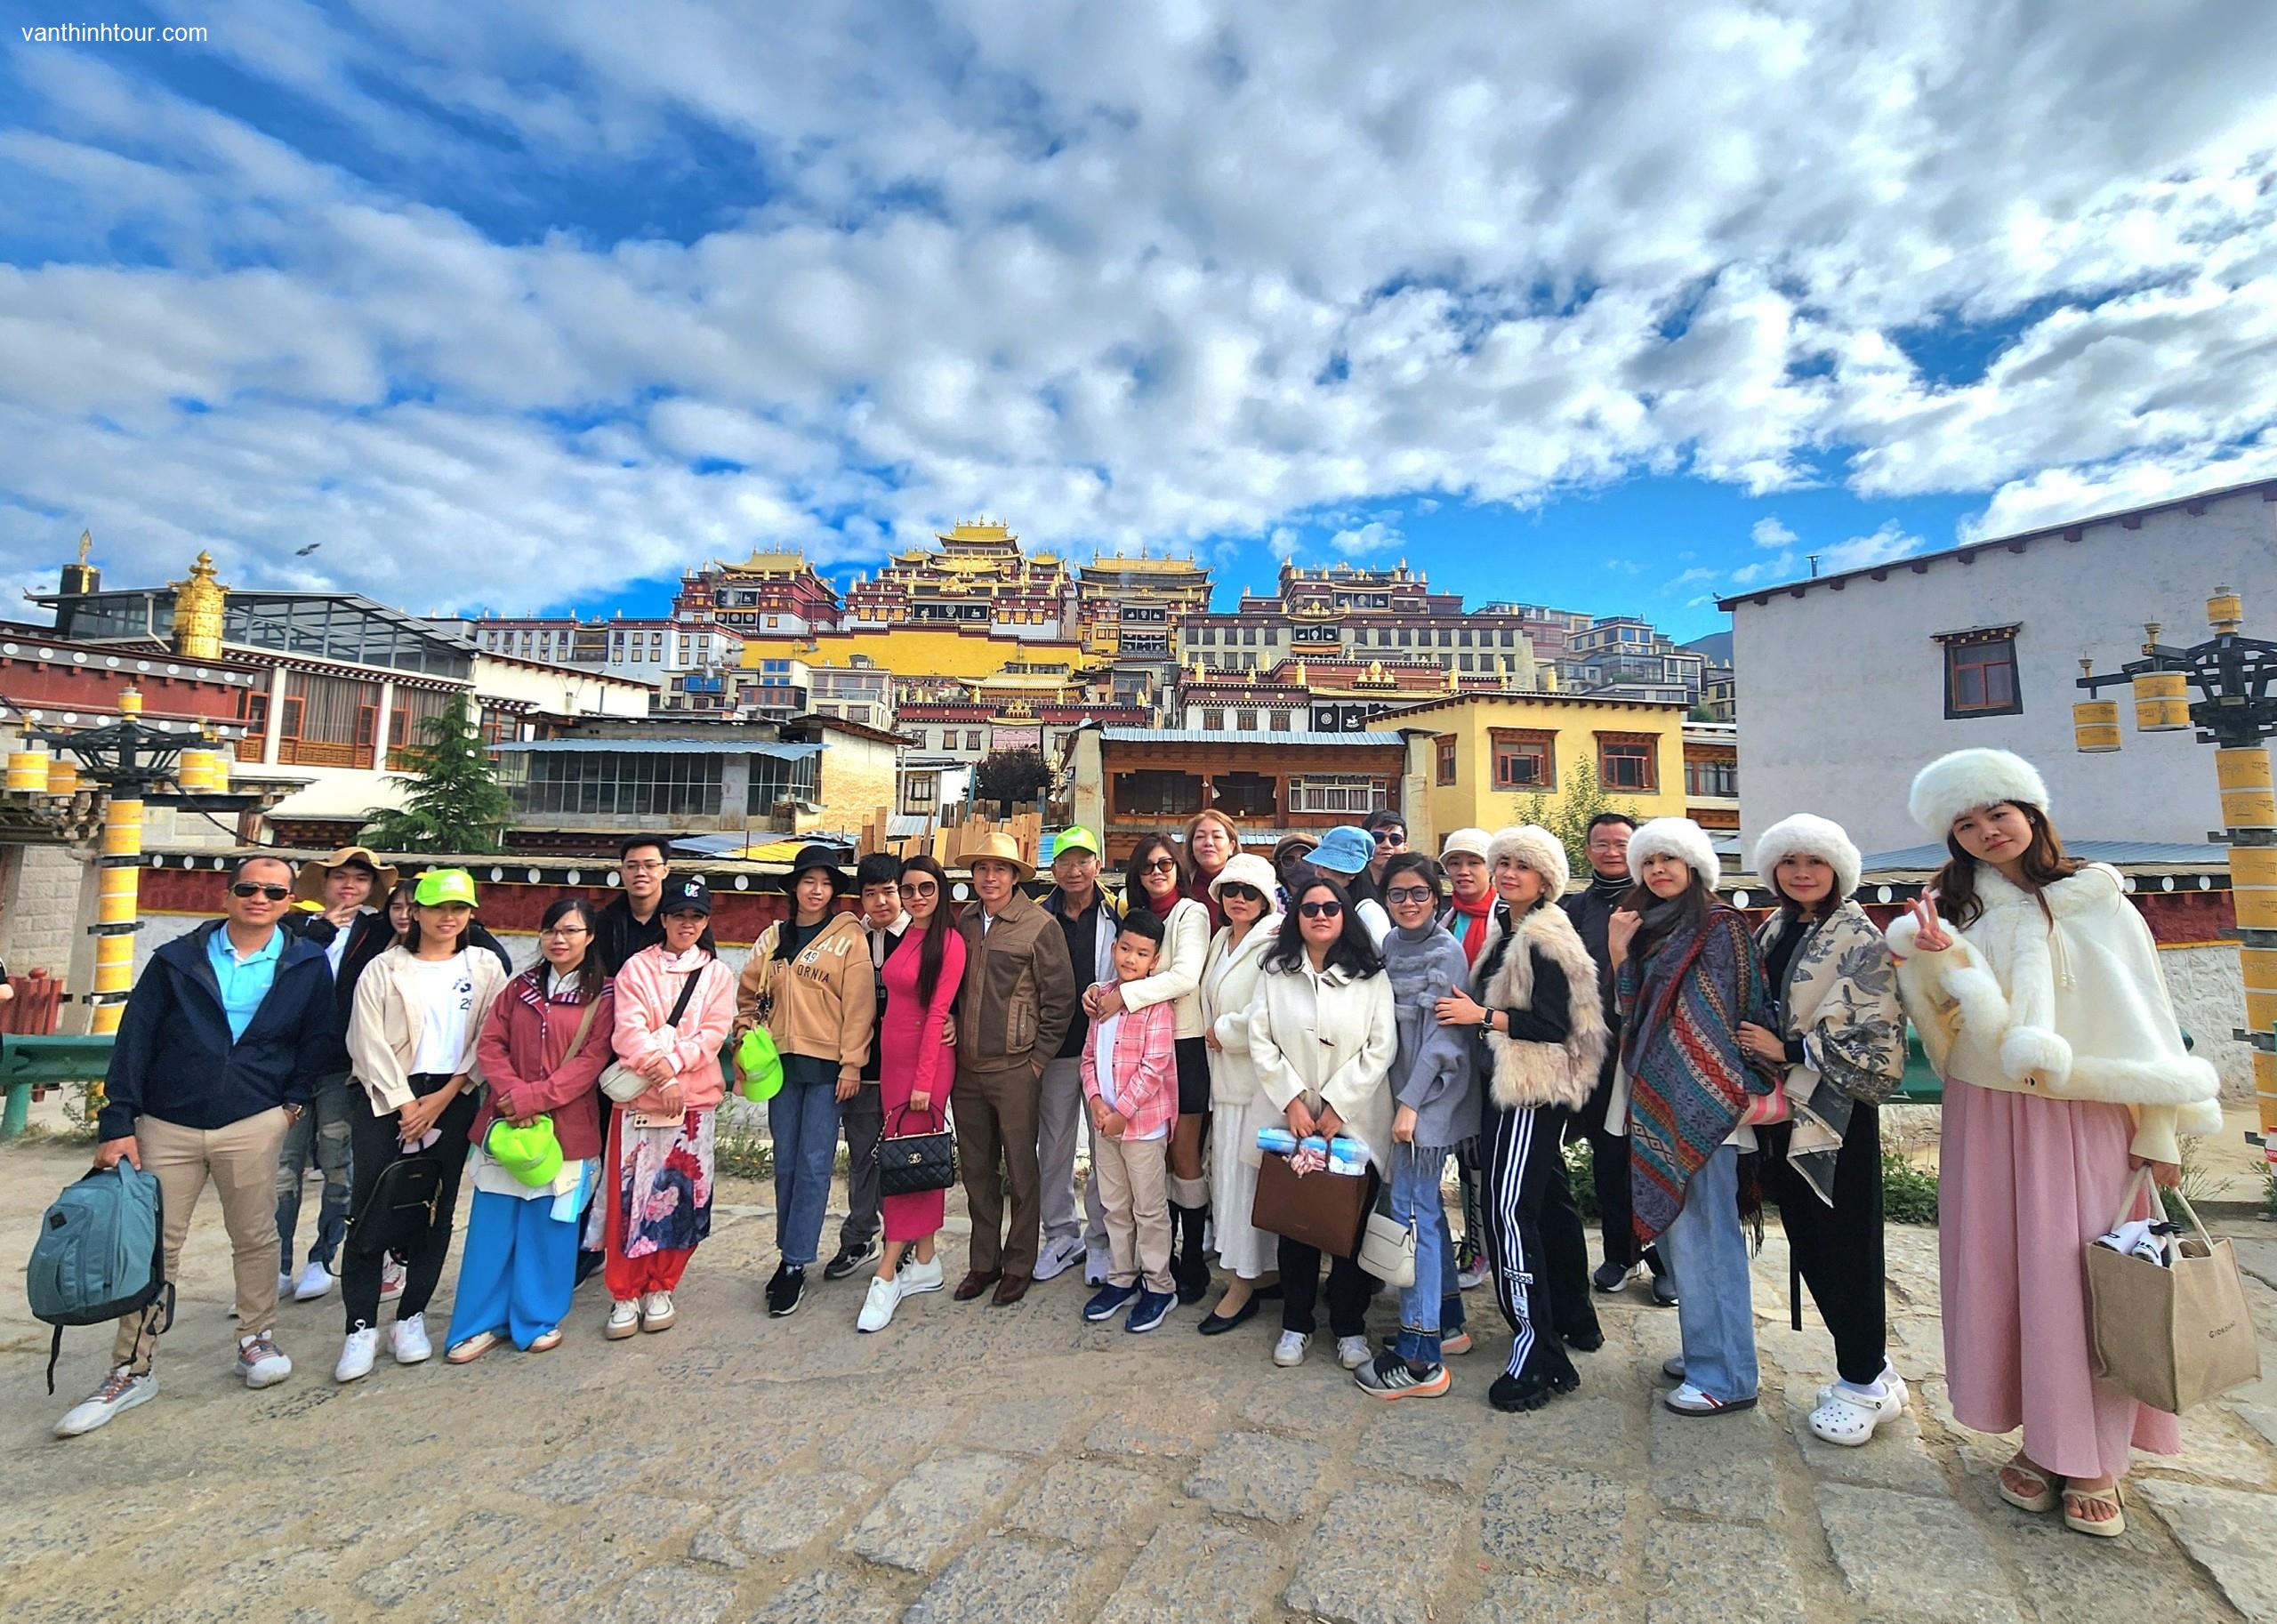 TOUR TRUNG QUỐC | LỆ GIANG - ĐẠI LÝ - SHANGRILA 6N5Đ - NO SHOPPING Tour Du Lịch Trung Quốc-1